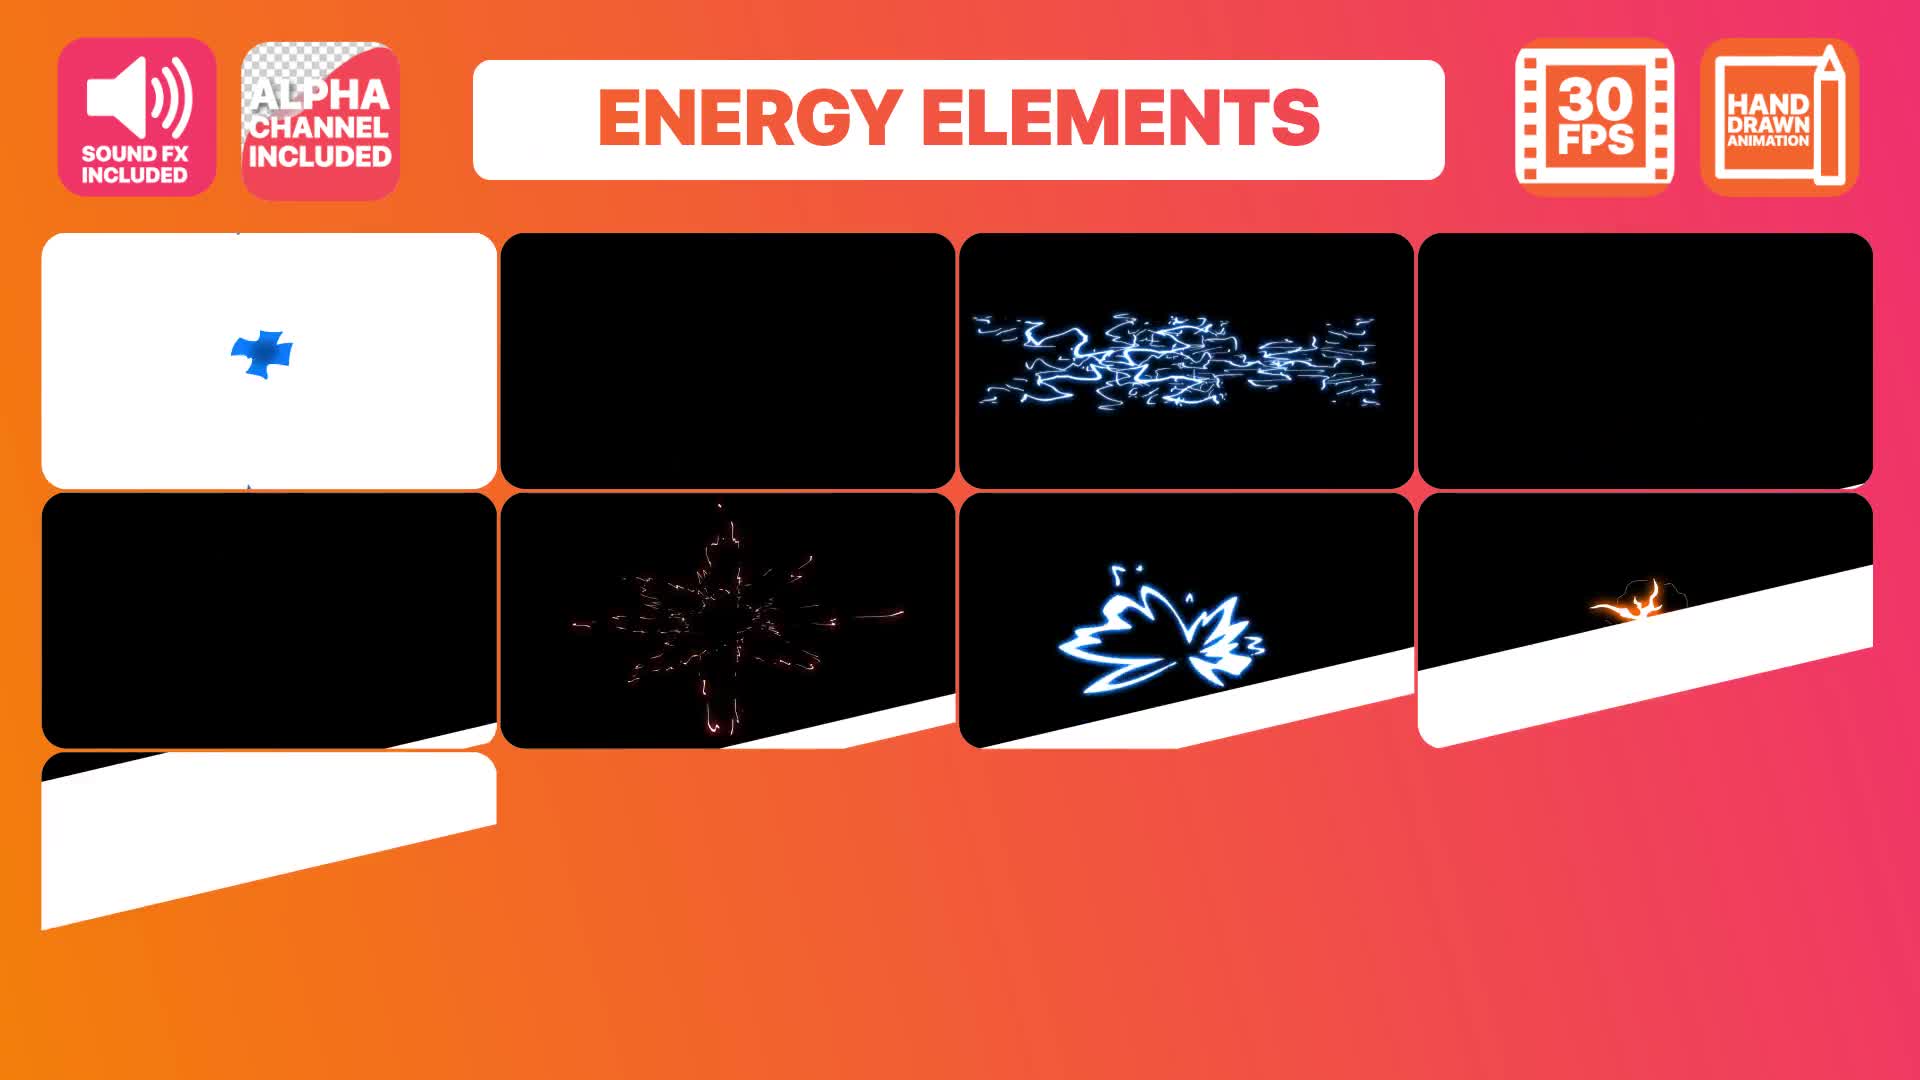 Electric Energy Elements | Premiere Pro MOGRT Videohive 30942789 Premiere Pro Image 1